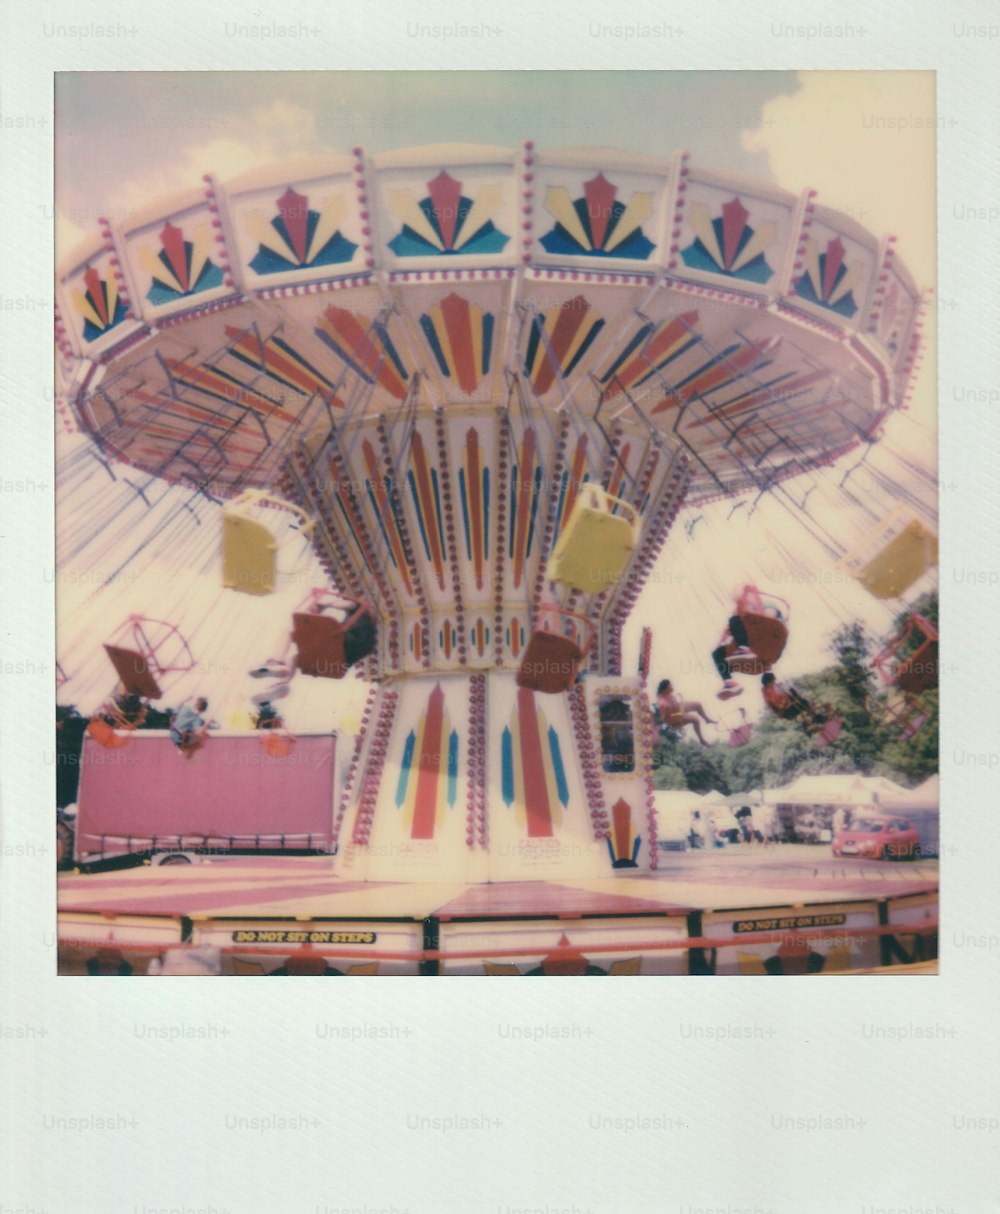 Una foto antigua de un paseo de carnaval